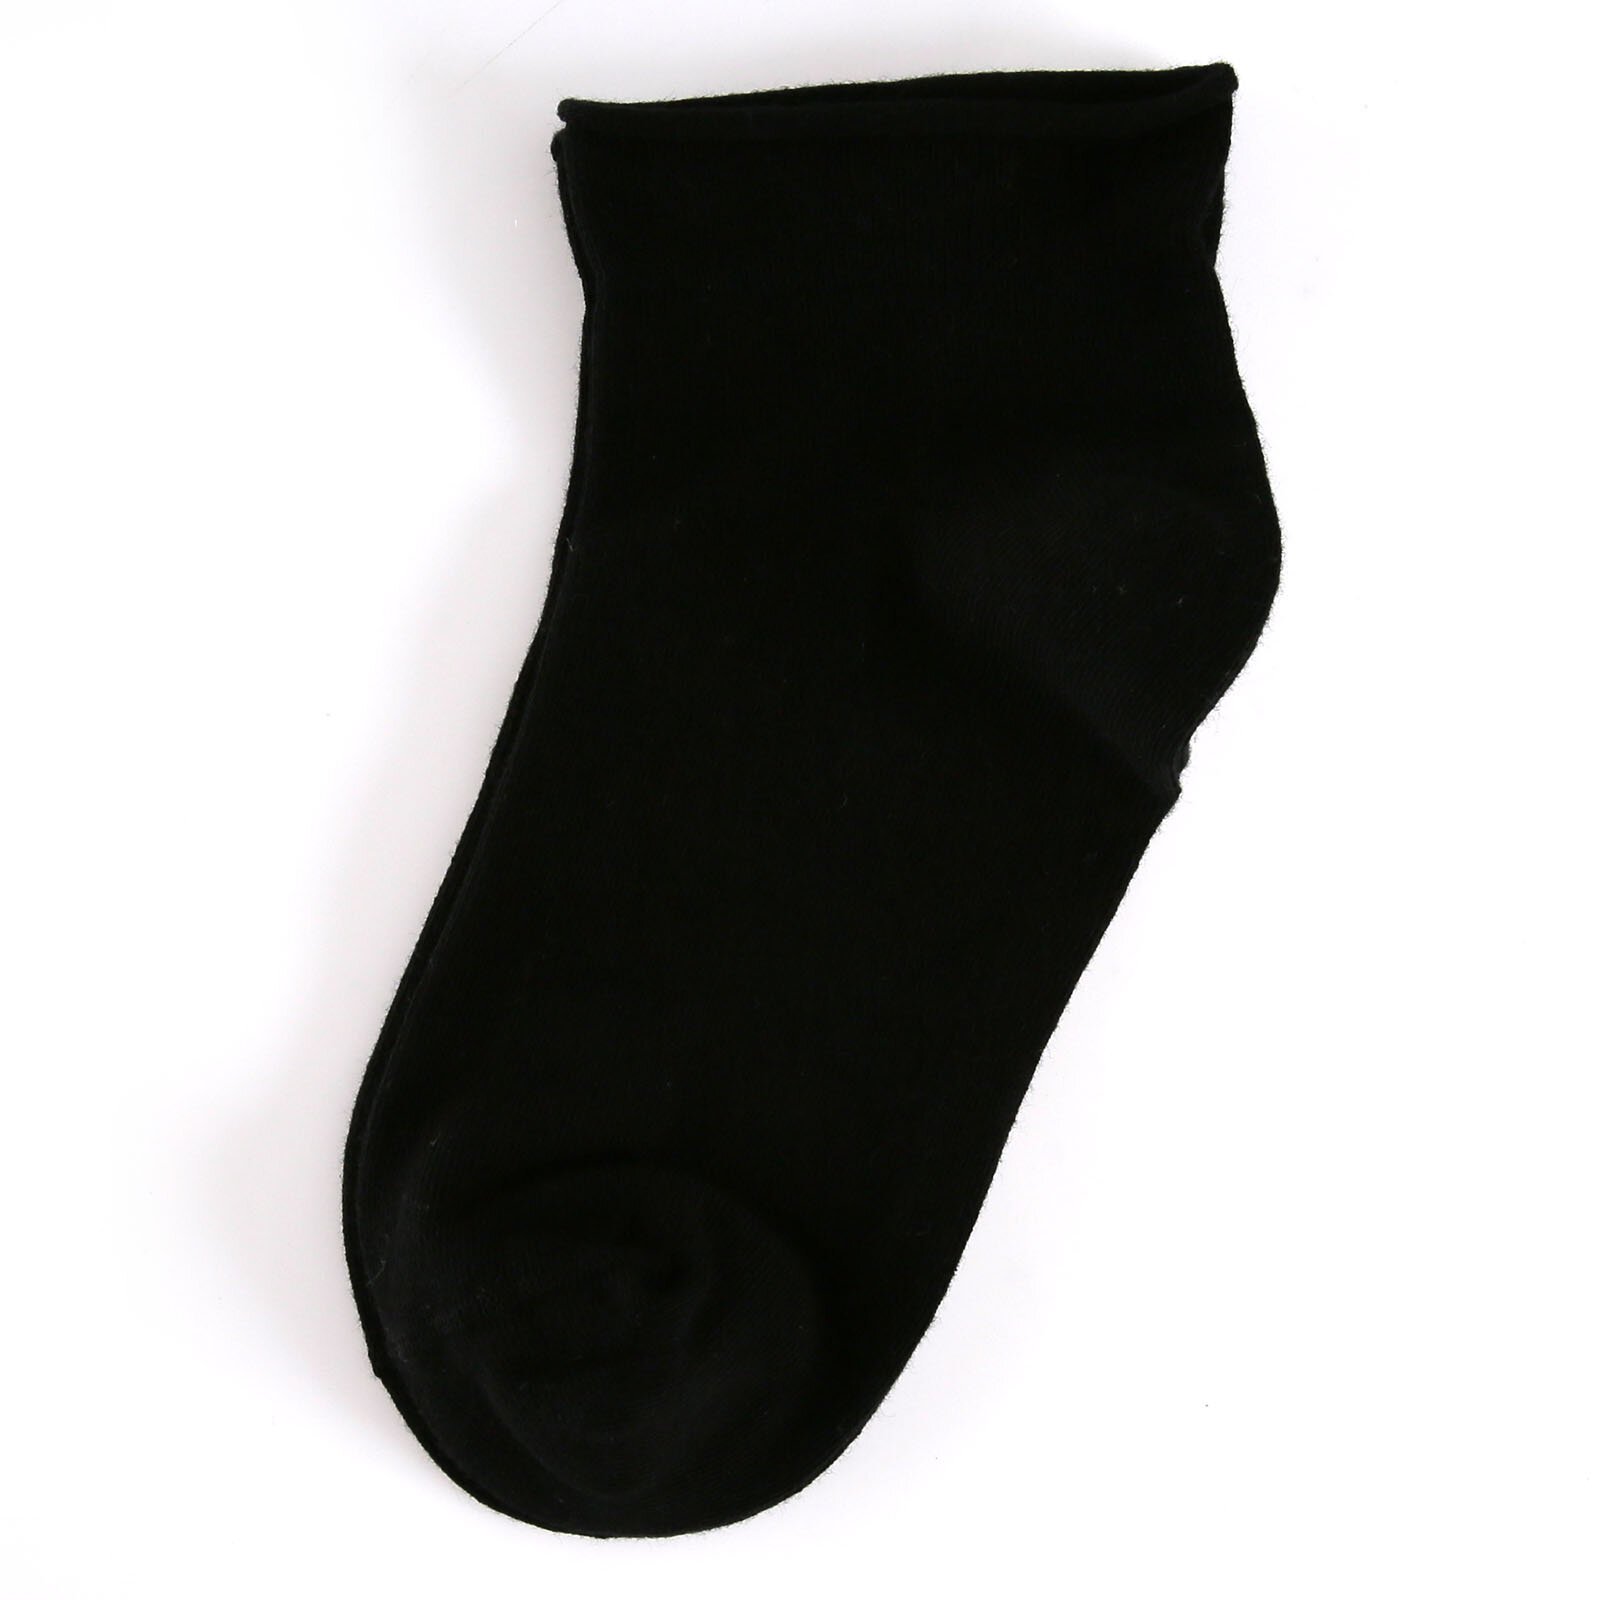 Hamile Pamuklu Çorap